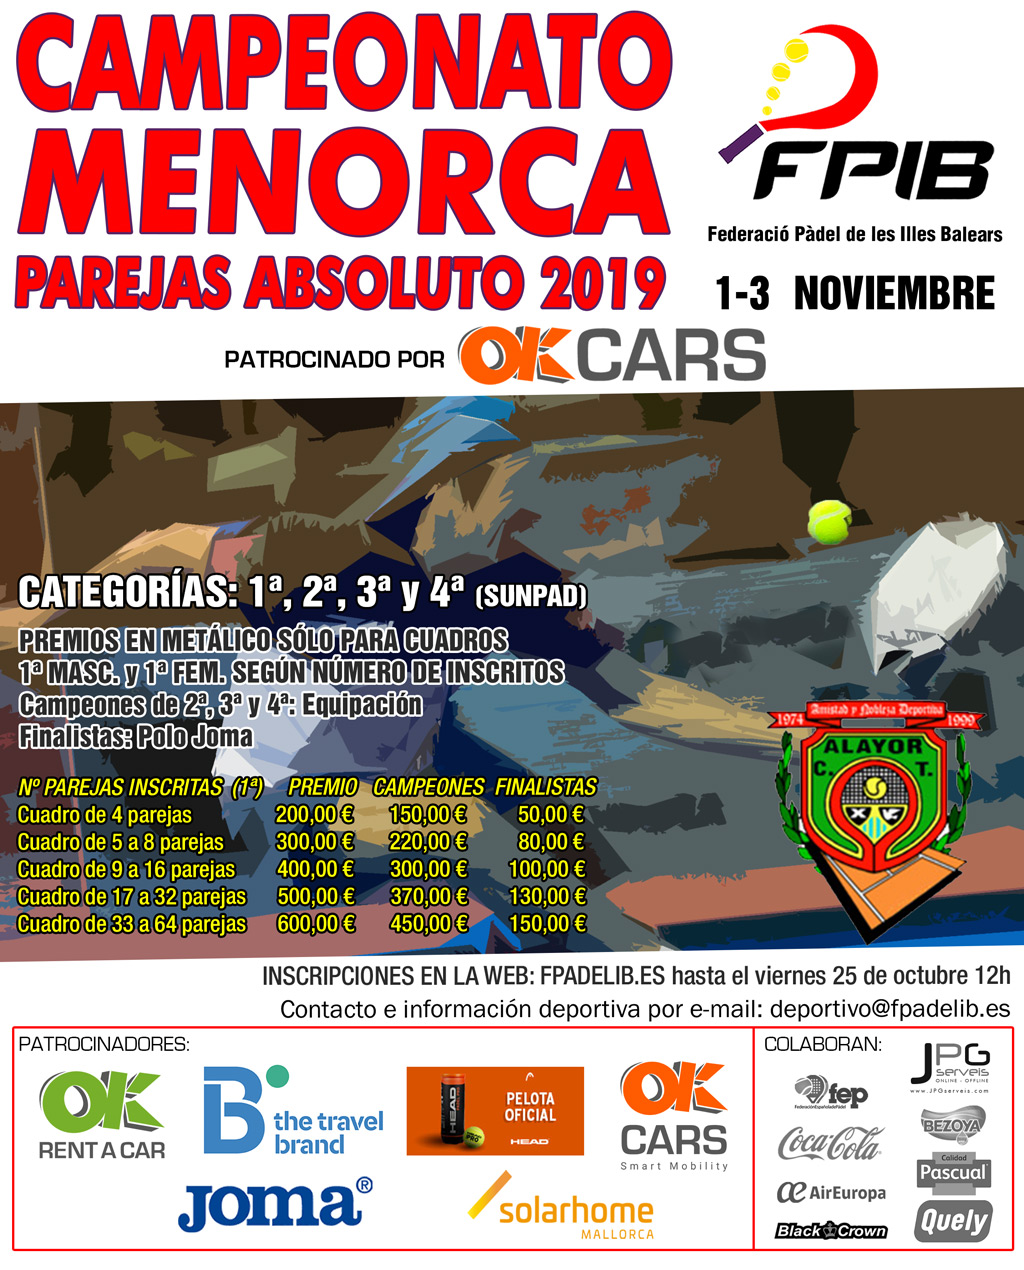 2019 Camp Menorca Equipos Absolutos 3, 4 y 5